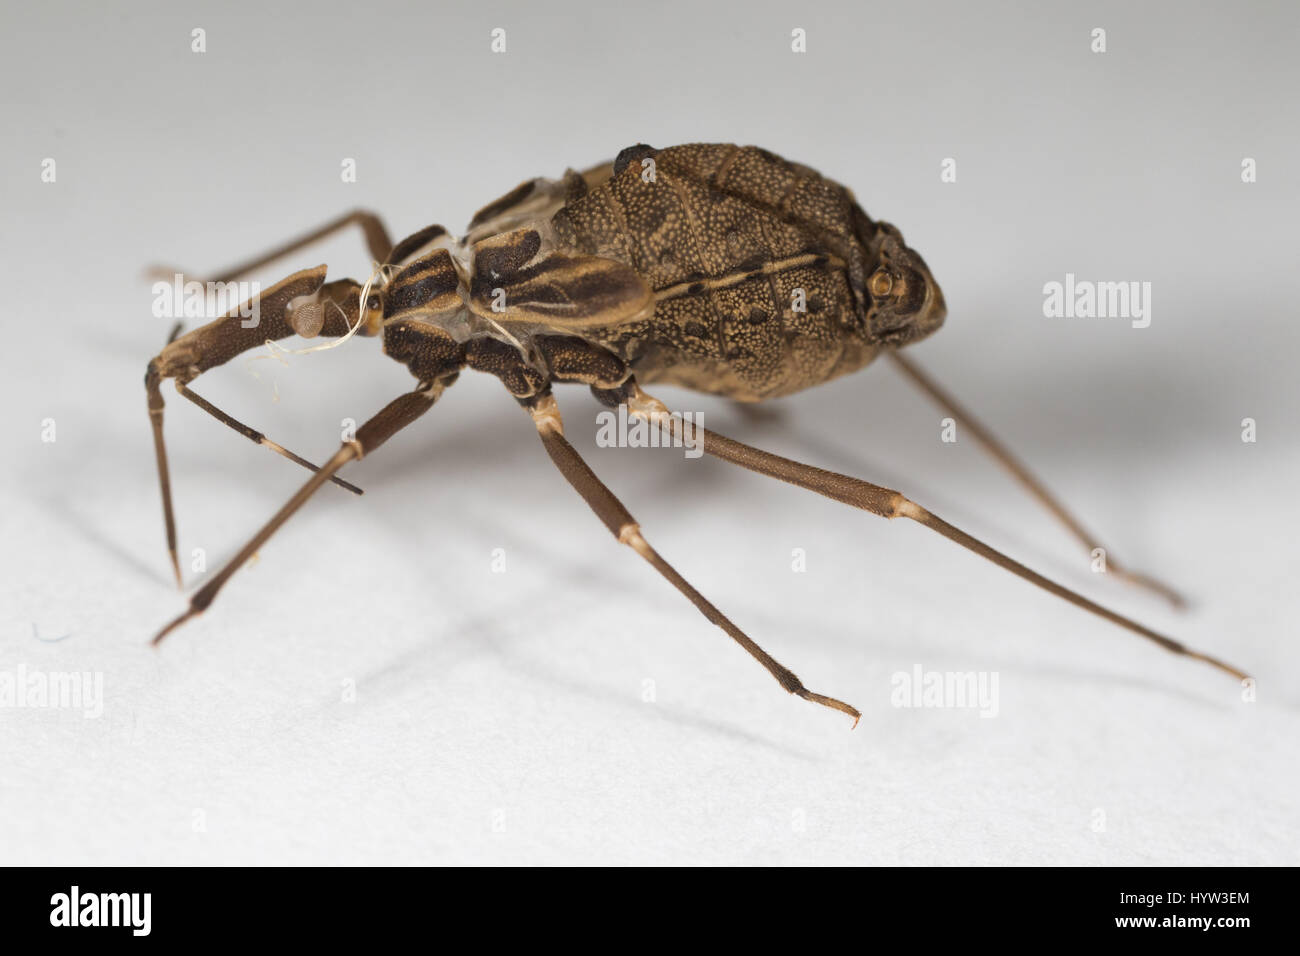 La peau de muer de Rhodnius prolixus (kissing bug) - l'insecte qui transmet le parasite (Trypanosoma cruzi) qui cause la maladie de Chagas Banque D'Images